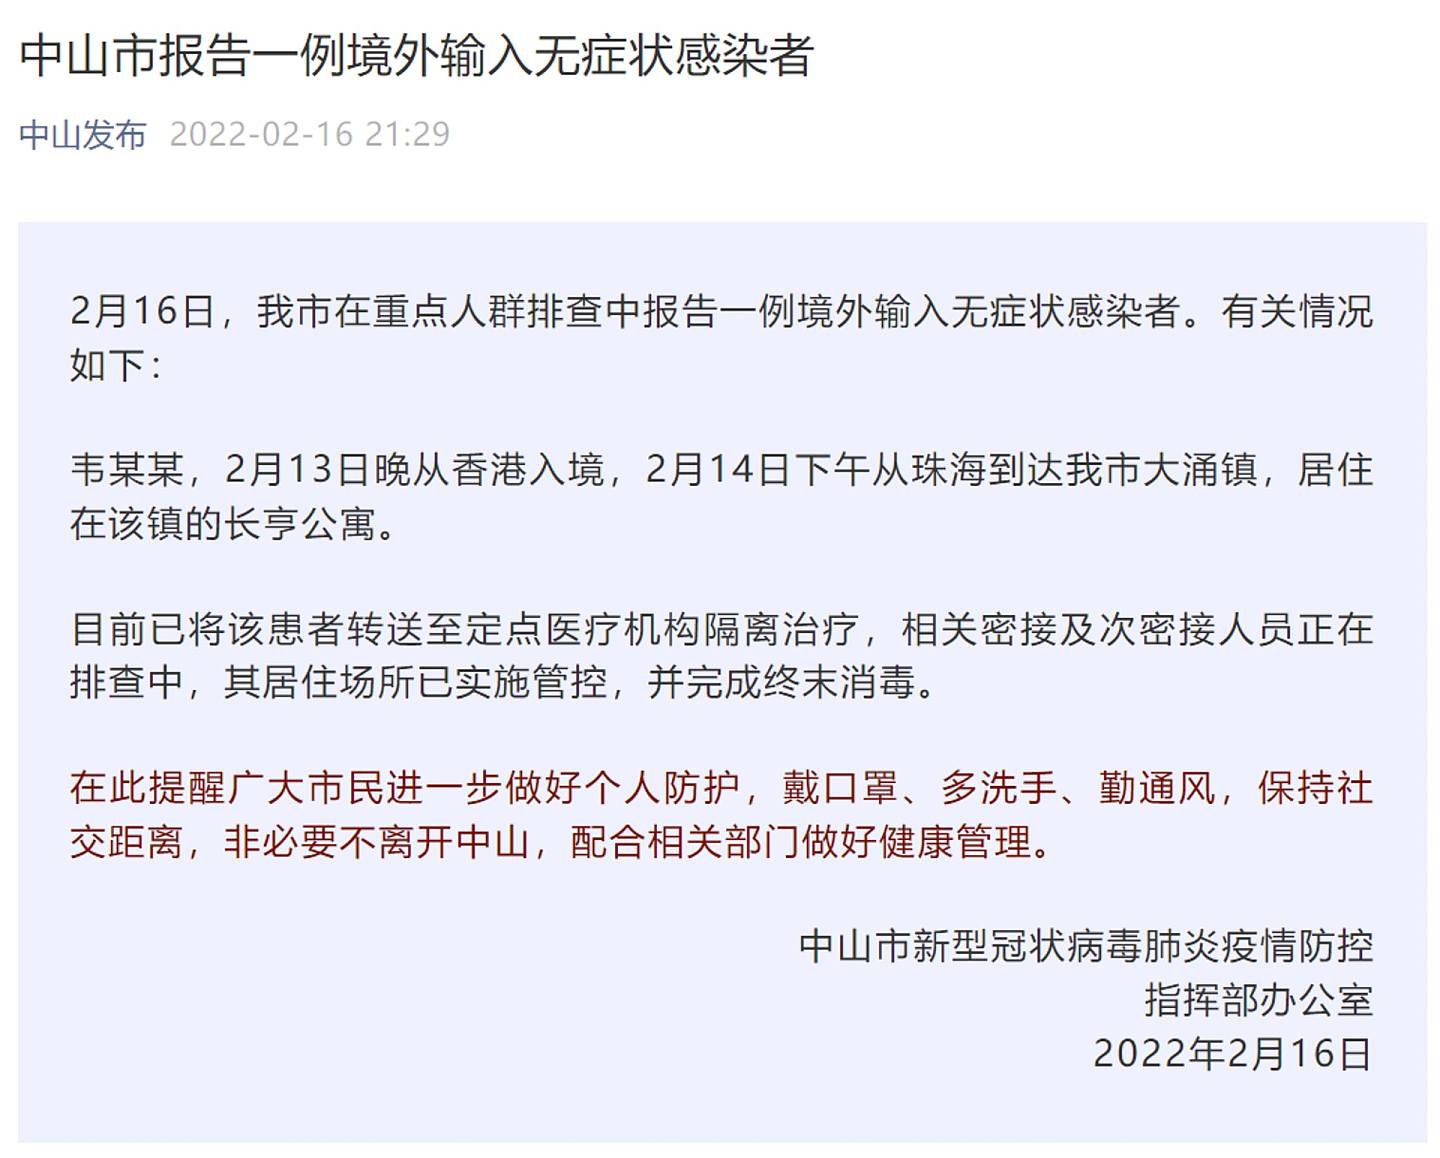 2022年2月17日，中山市发公告，公开一宗从珠海入境的确诊个案，患者2月13日从香港入境珠海。 行踪不符合隔离政策。 （中山发布）